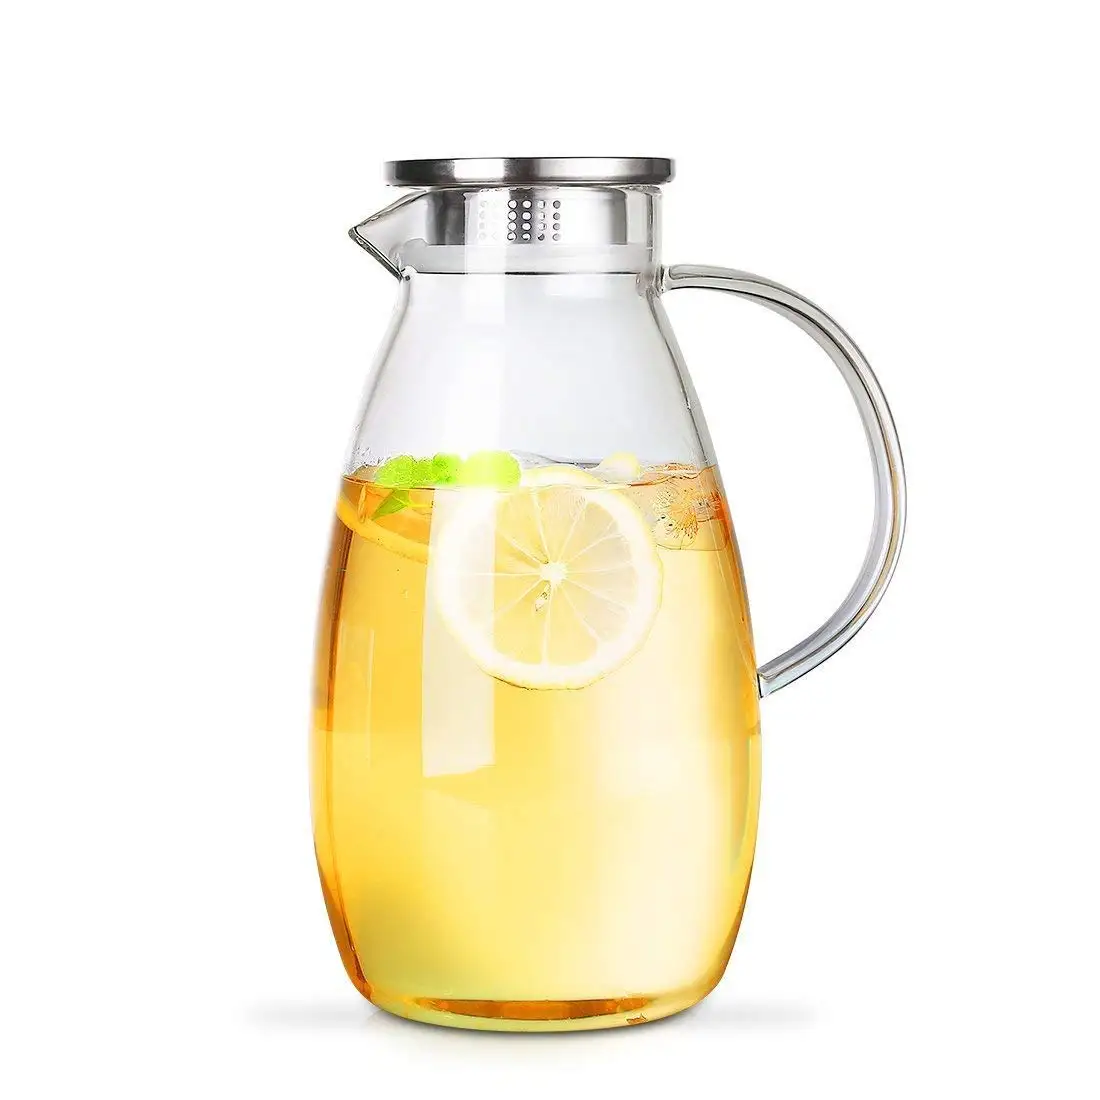 Кувшин для сока. Графин для сока. Графин для лимонада. Лимонад в кувшине.